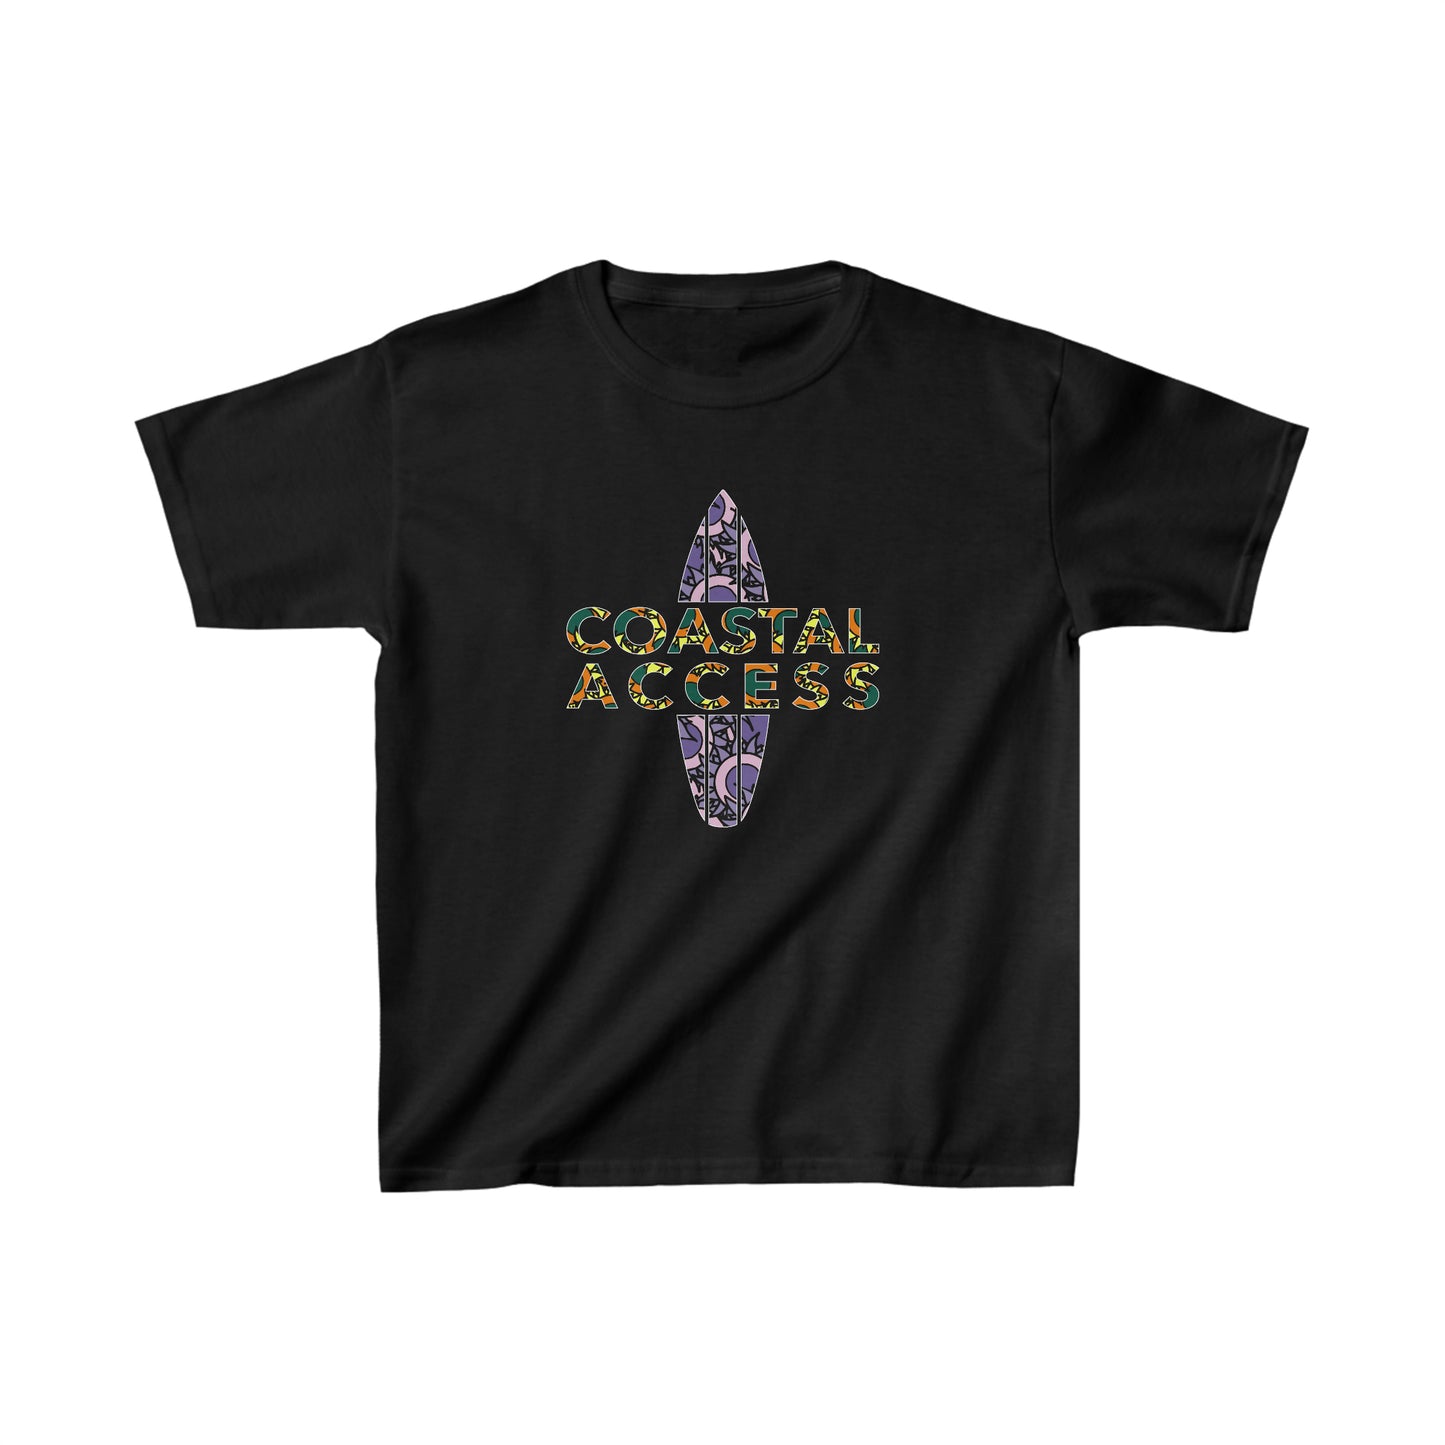 Coastal Access Kid's T-shirt (6 Colors)